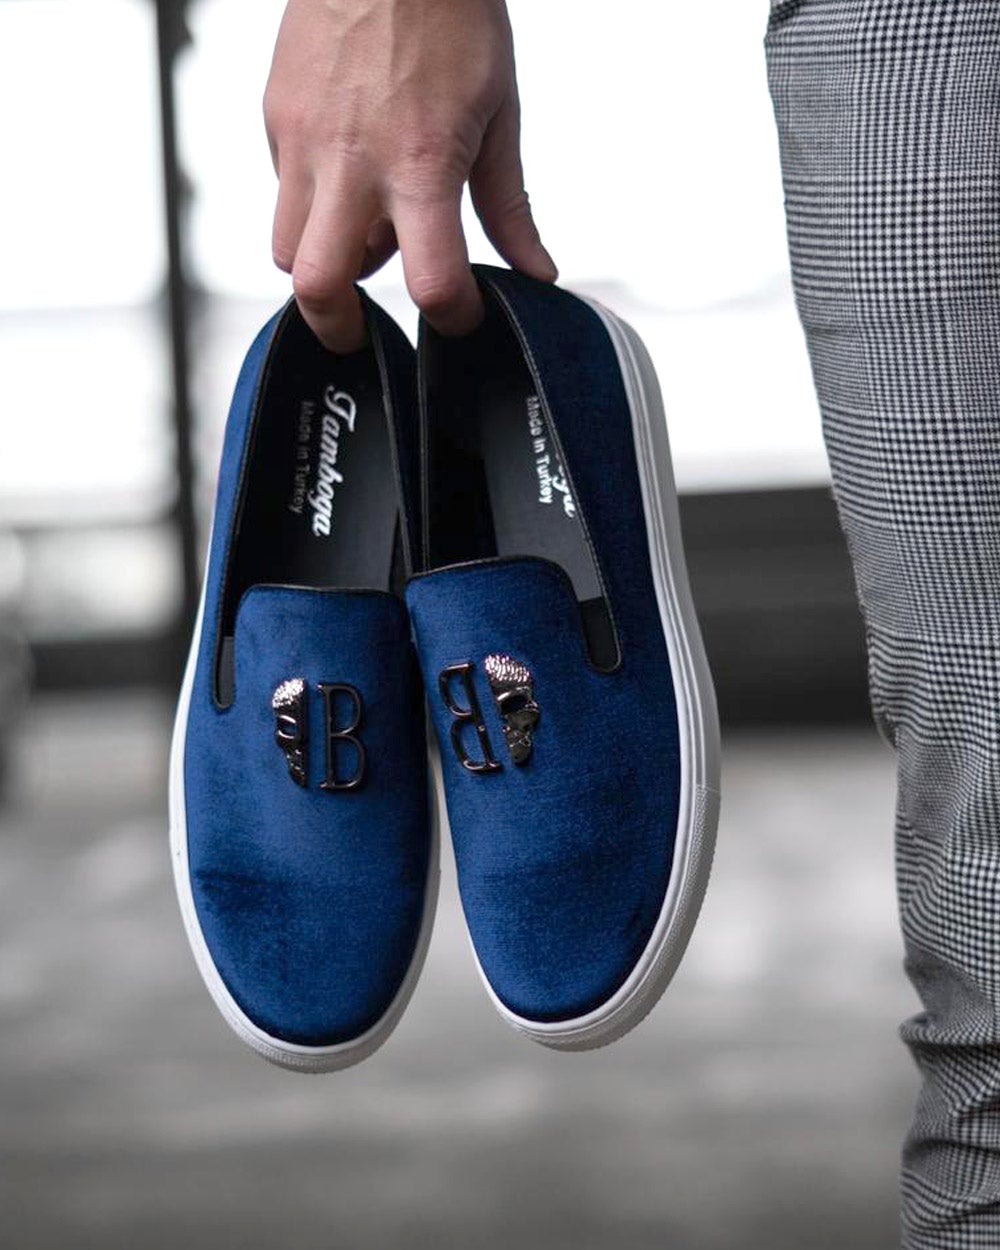 Chaussures mocassins Bleu aspect daim cuir suédé avec tête mort métal et semelle type sneakers pour homme